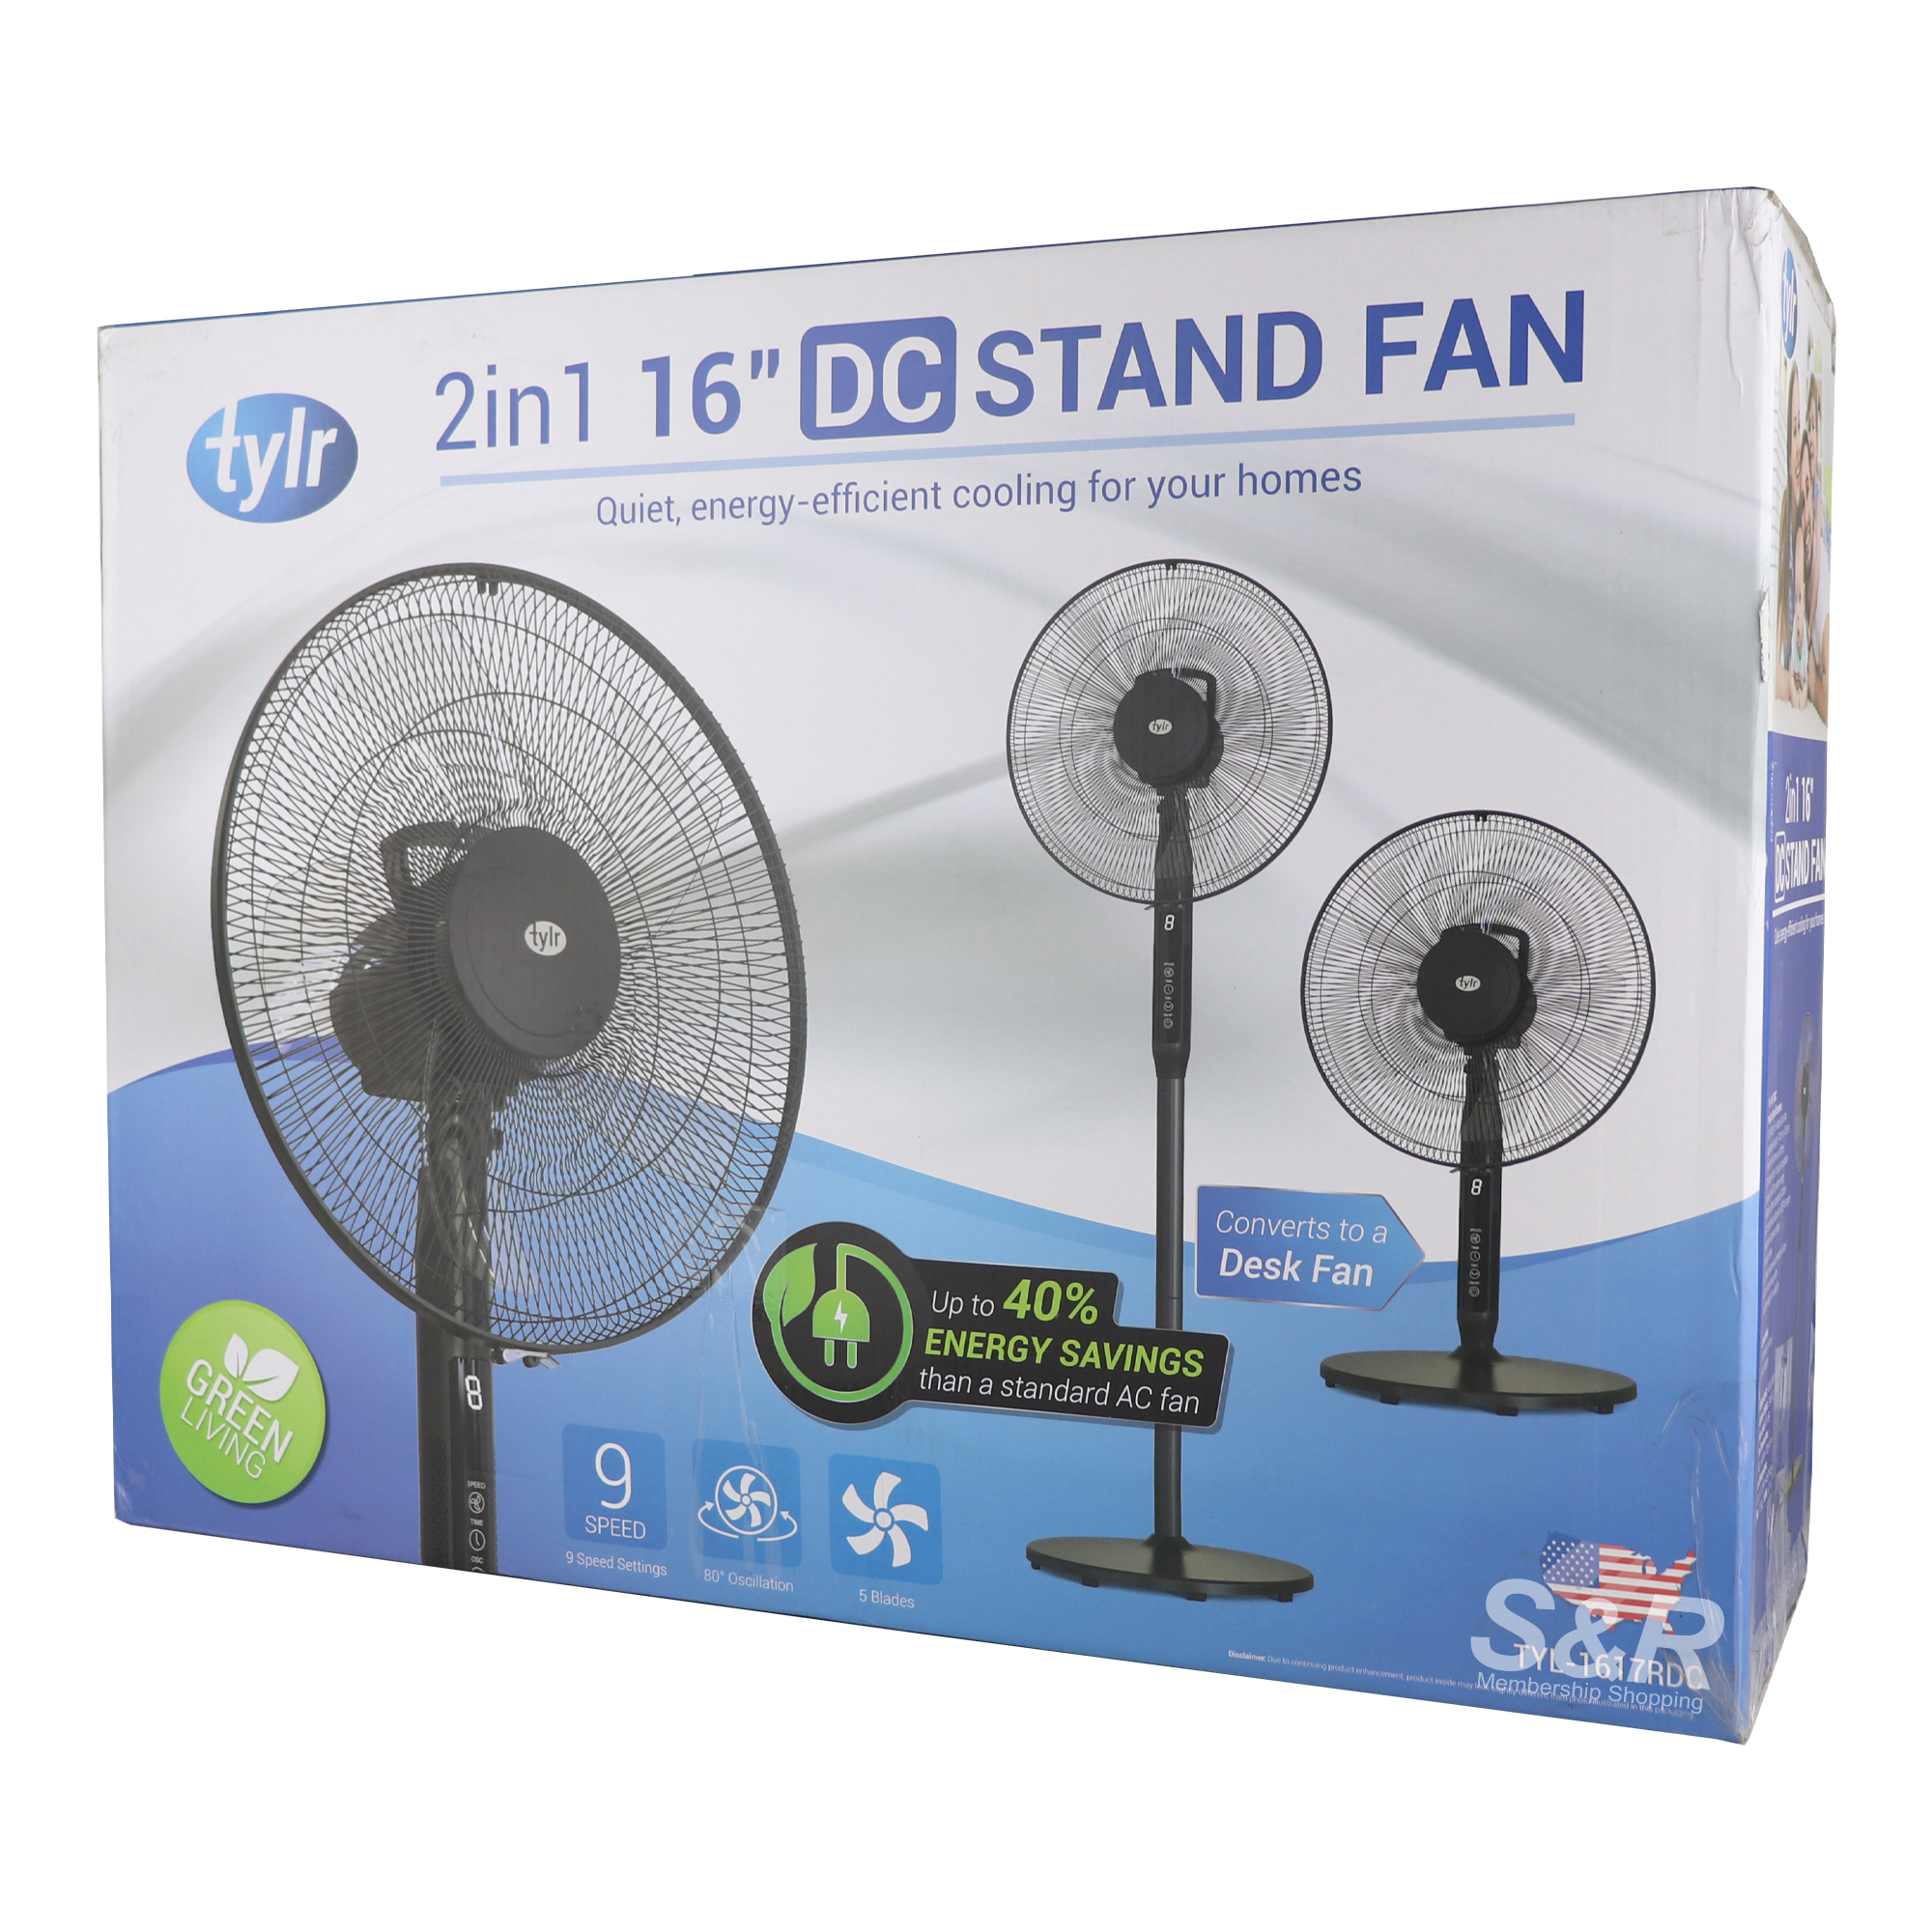 Tylr 2in1 16in DC Stand Fan